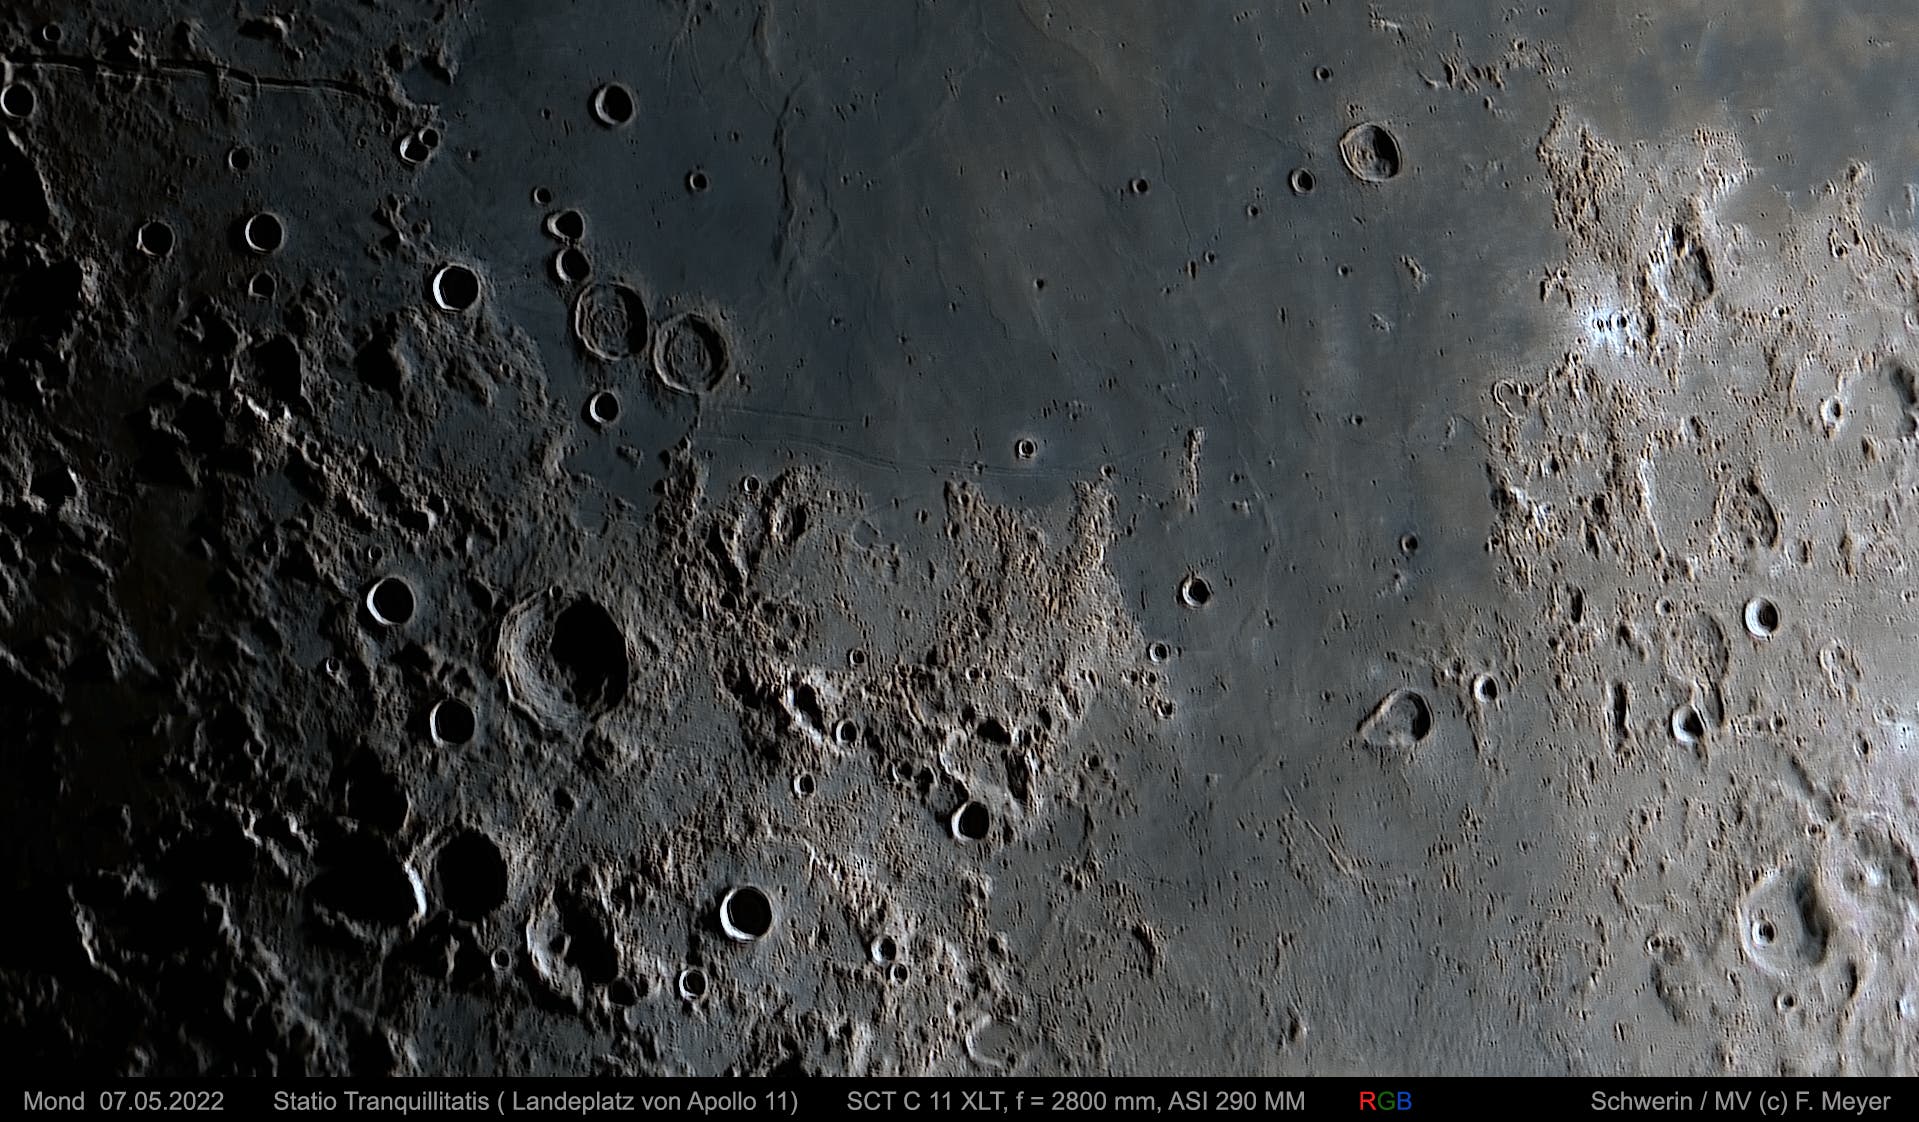 Mond, Statio Tranquillitatis am 7. Mai 2022 (2)